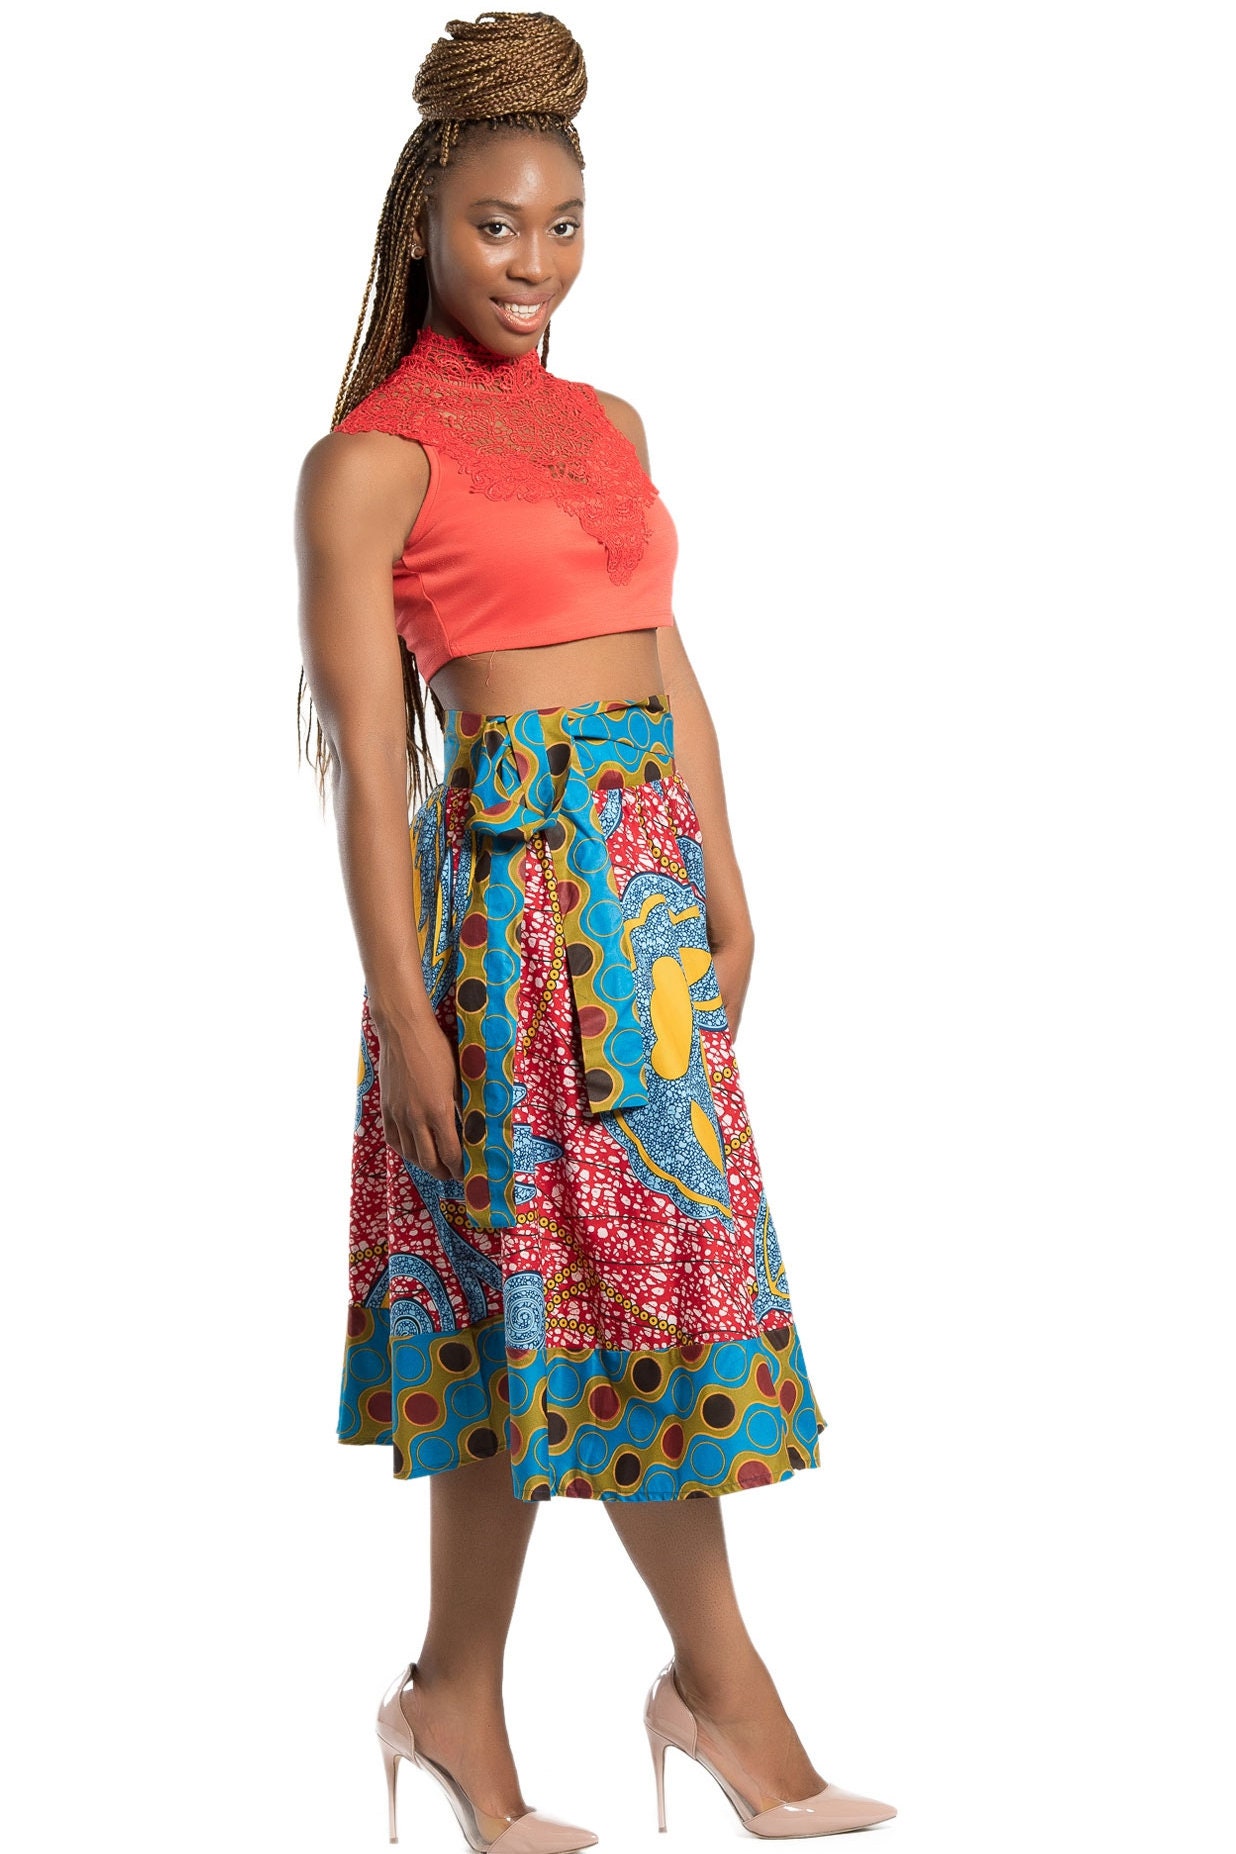 African Print Skirt / African Print Midi Skirt / Midi Skirt/ | Etsy